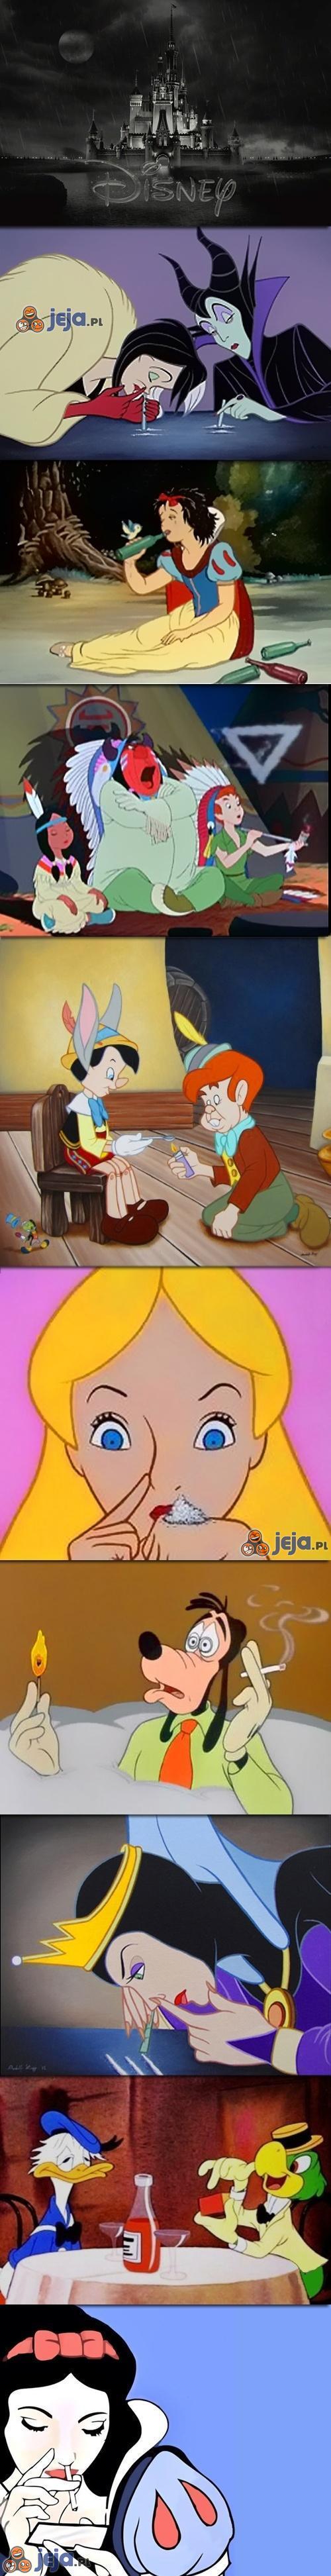 Gdyby postacie z Disneya odkryły narkotyki